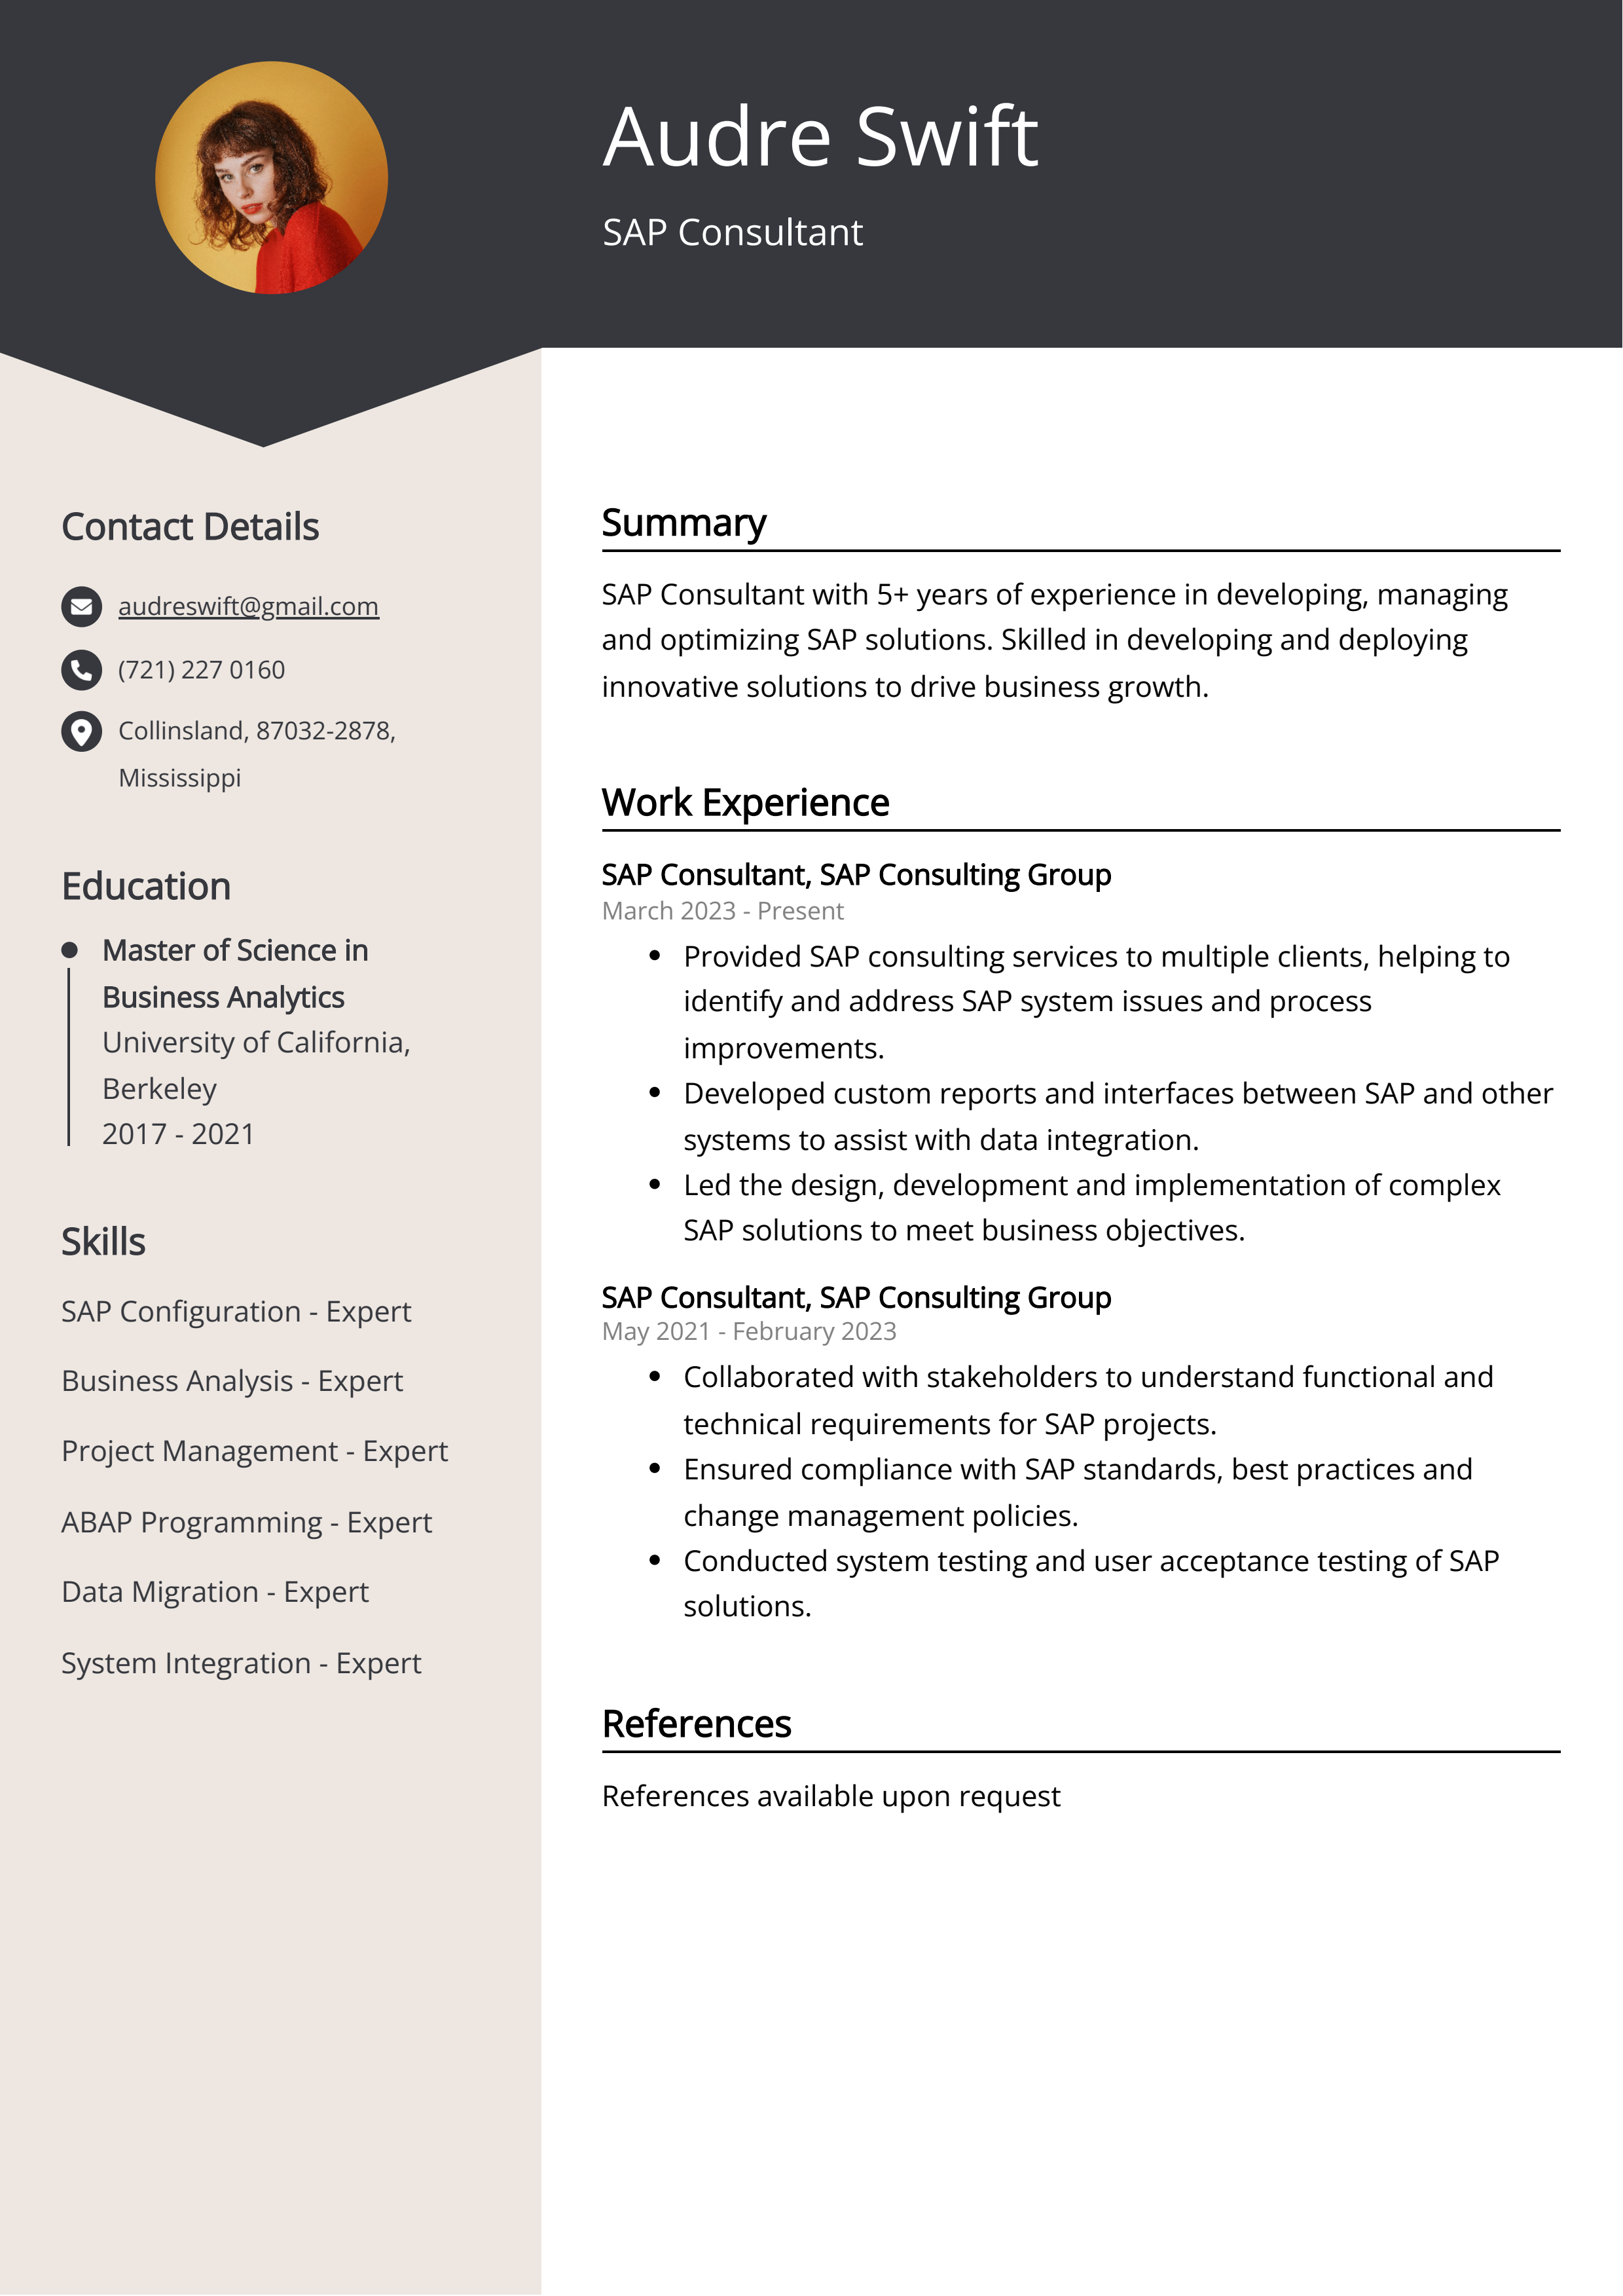 SAP Consultant CV Example